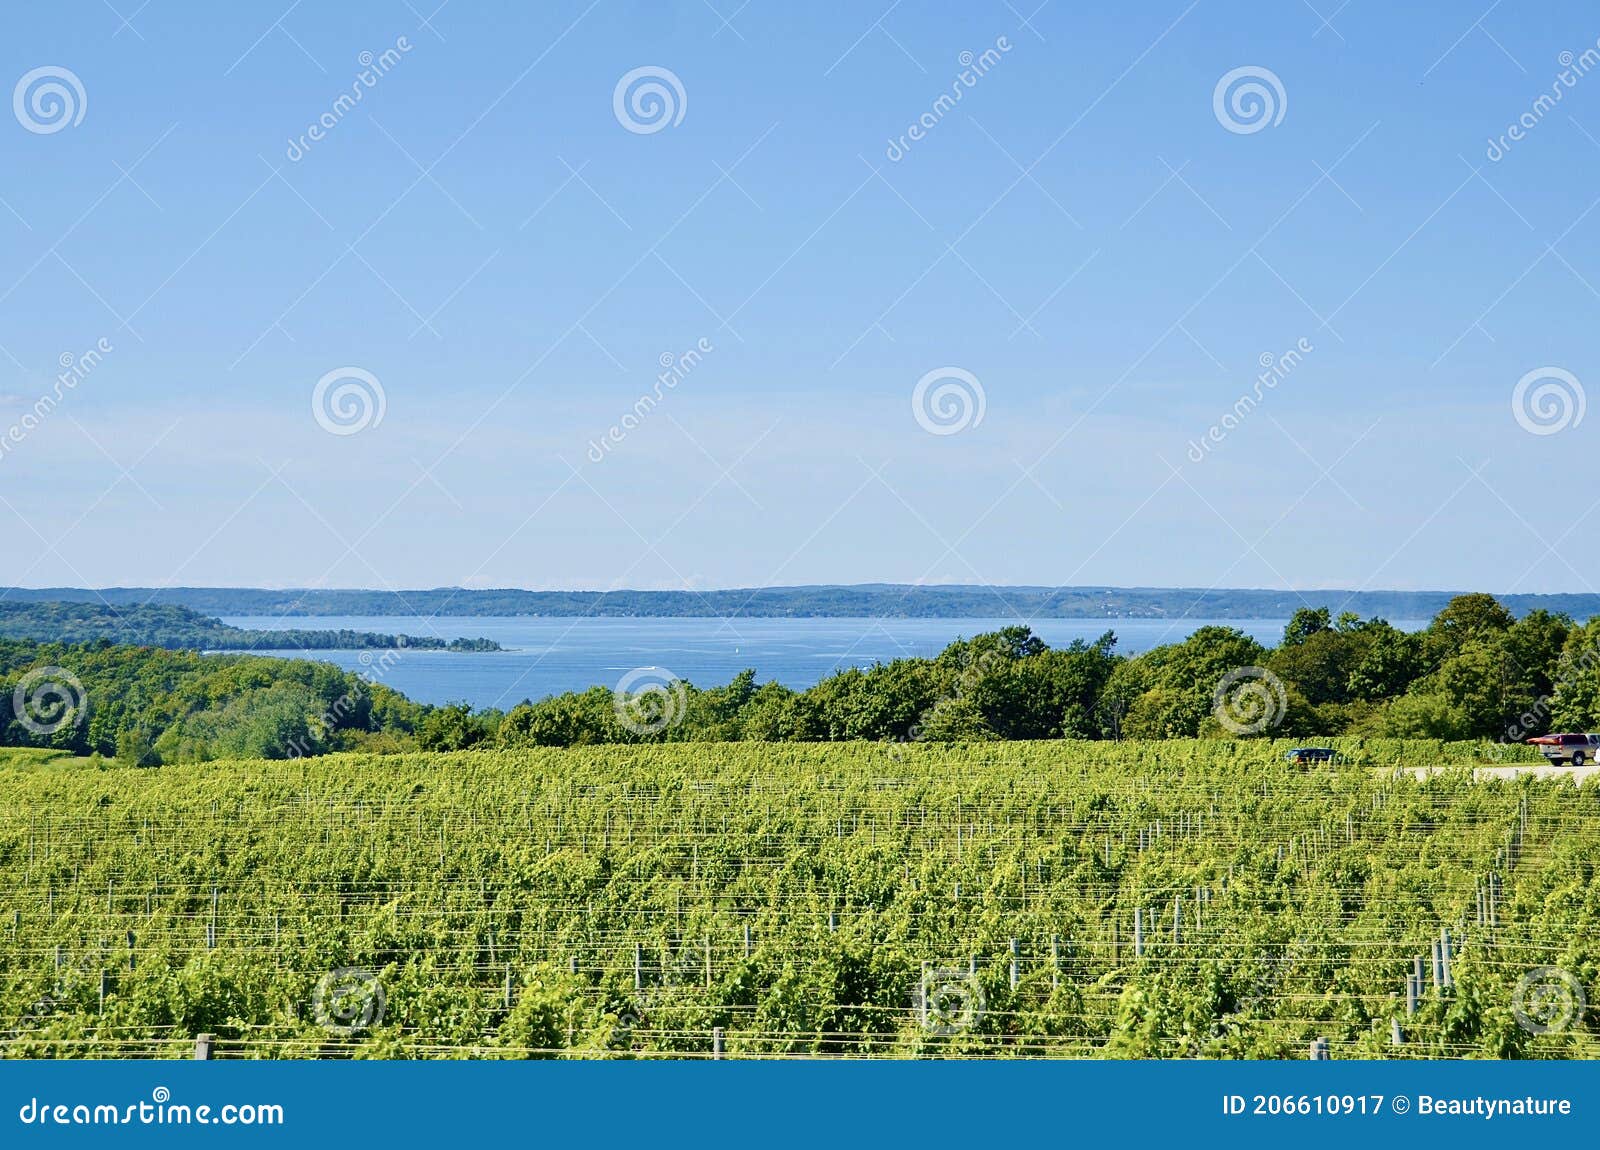 scenic view of lakeshore with vineyard, michigan